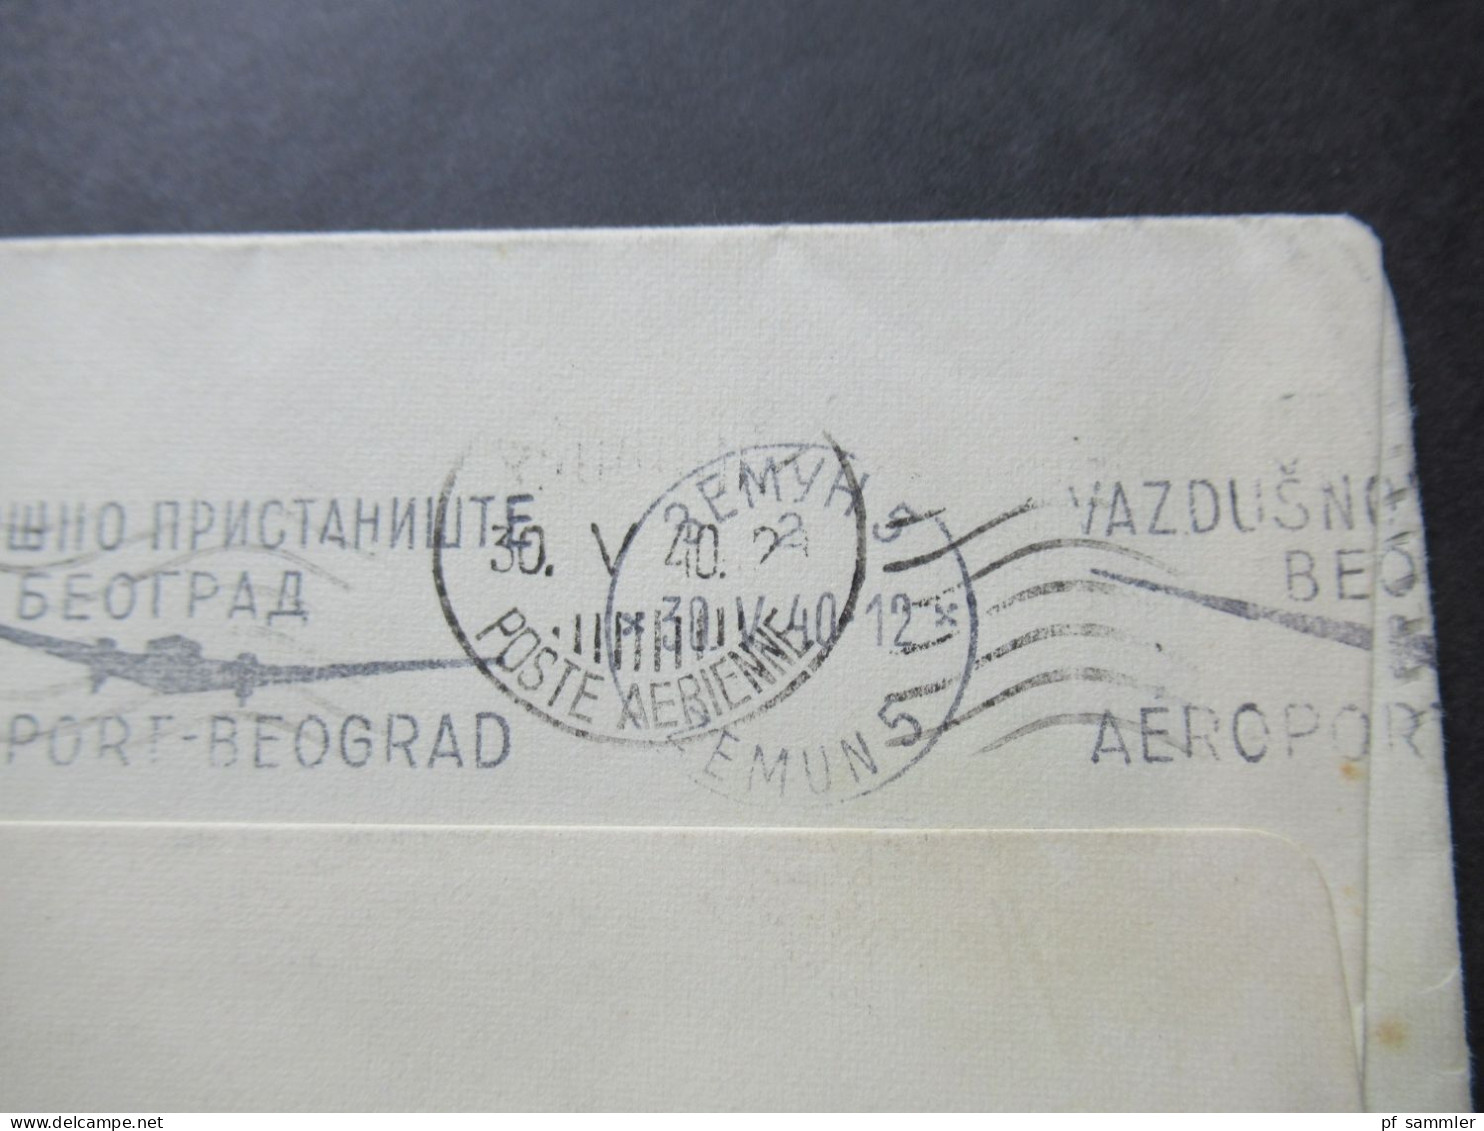 Jugoslawien 1940 Vorerstag Balkanentente Stempel Vom 30.5.1940 (1 Tag Vor Der Ausgabe!!) Luftpost Beograd - Athen - Storia Postale